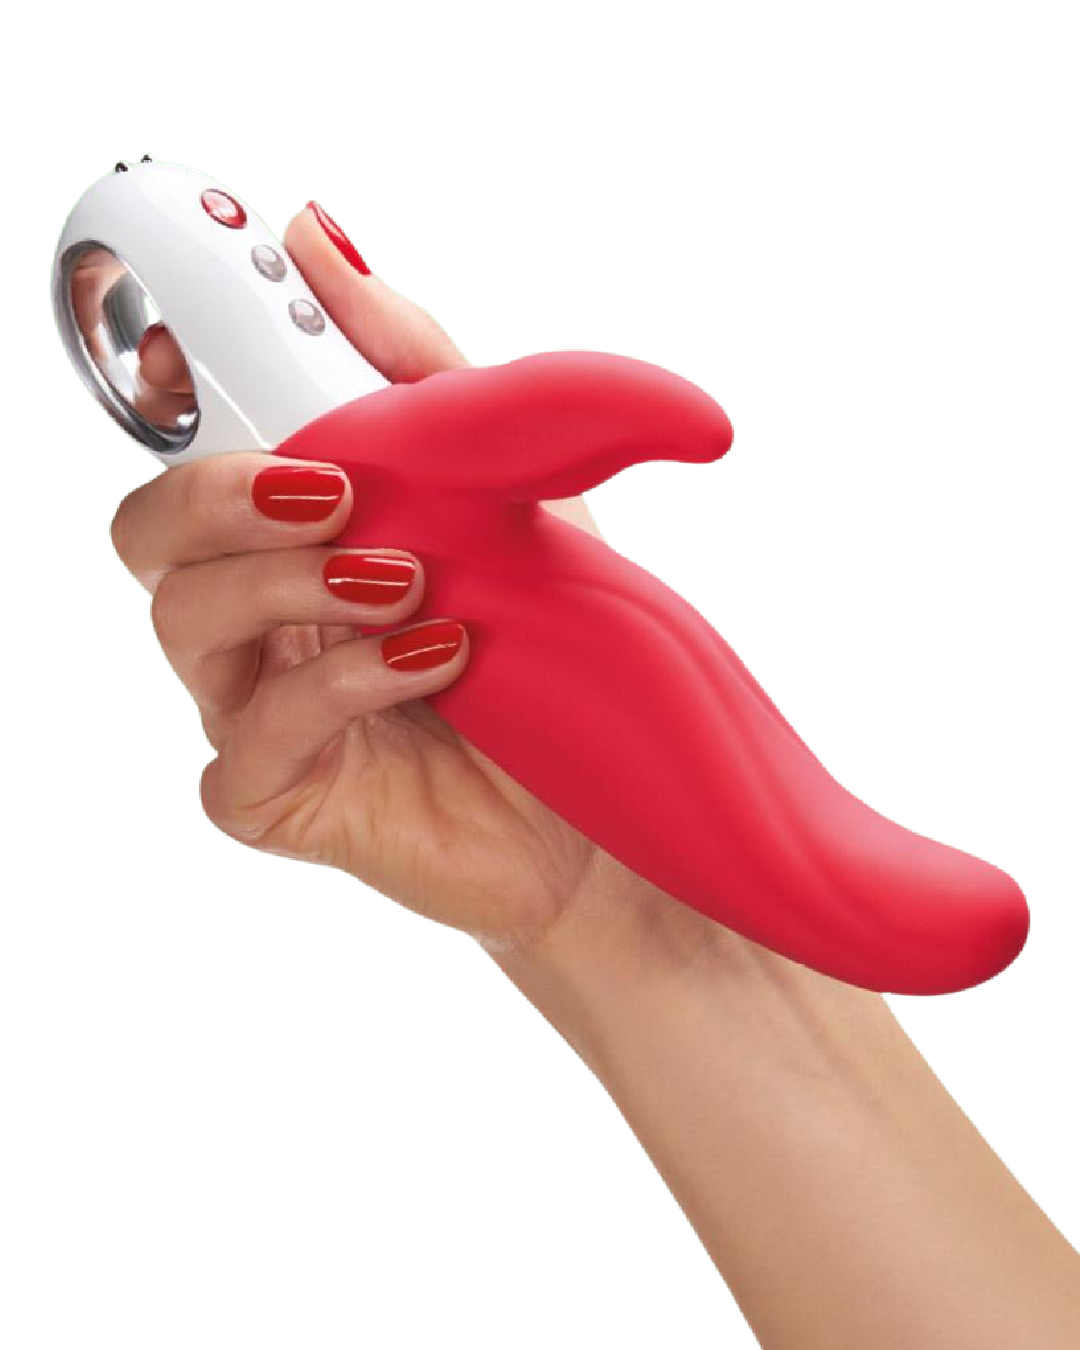 Fun Factory Lady Bi Dual Stimulator Vibrator - India Red held in a hand